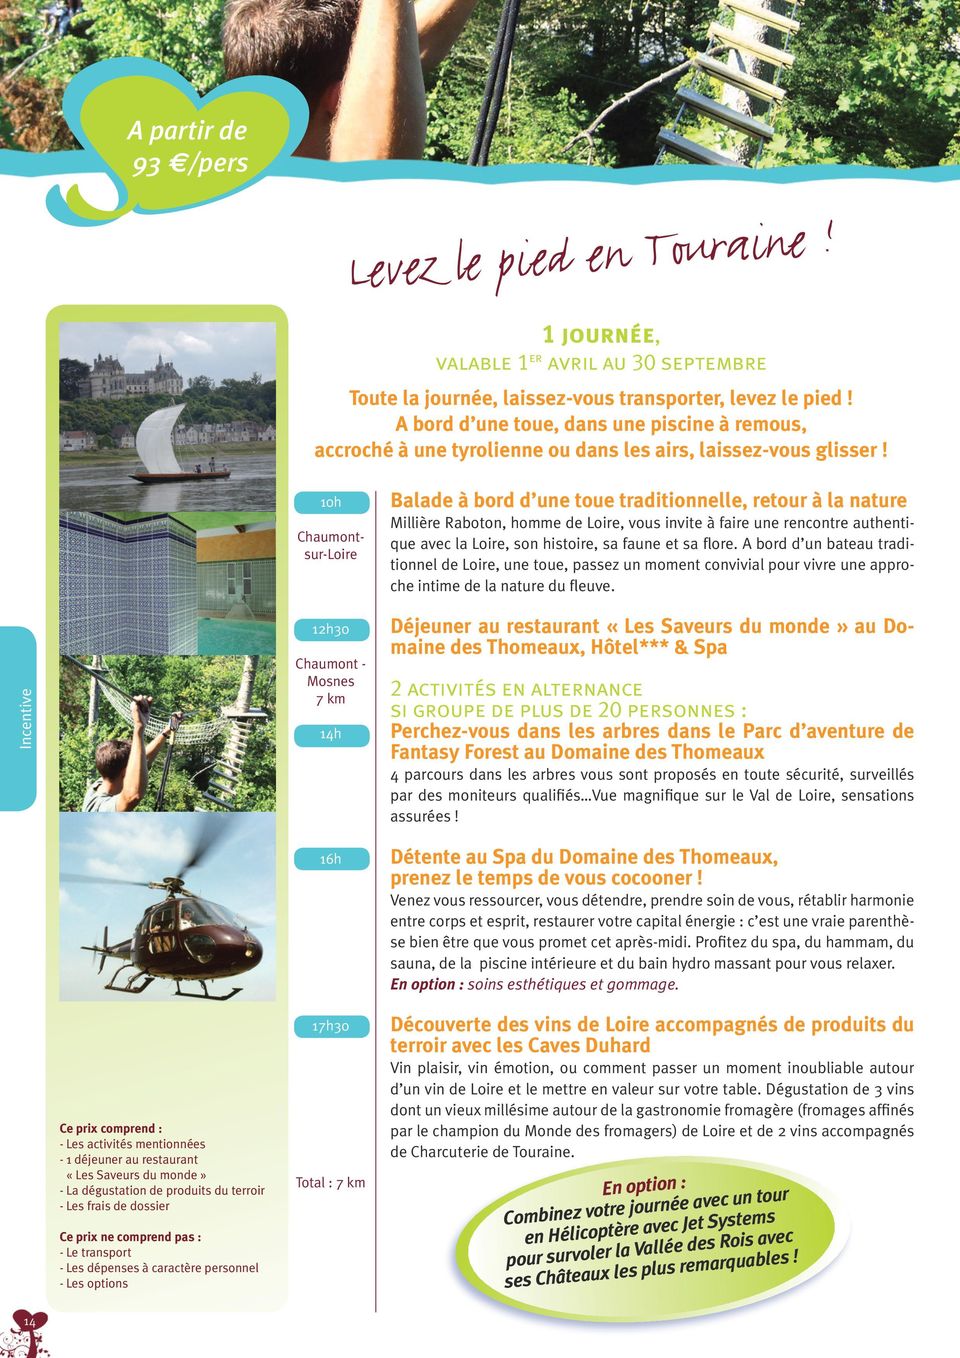 Incentive Chaumontsur-Loire 12h30 Chaumont - Mosnes 7 km 16h Balade à bord d une toue traditionnelle, retour à la nature Millière Raboton, homme de Loire, vous invite à faire une rencontre